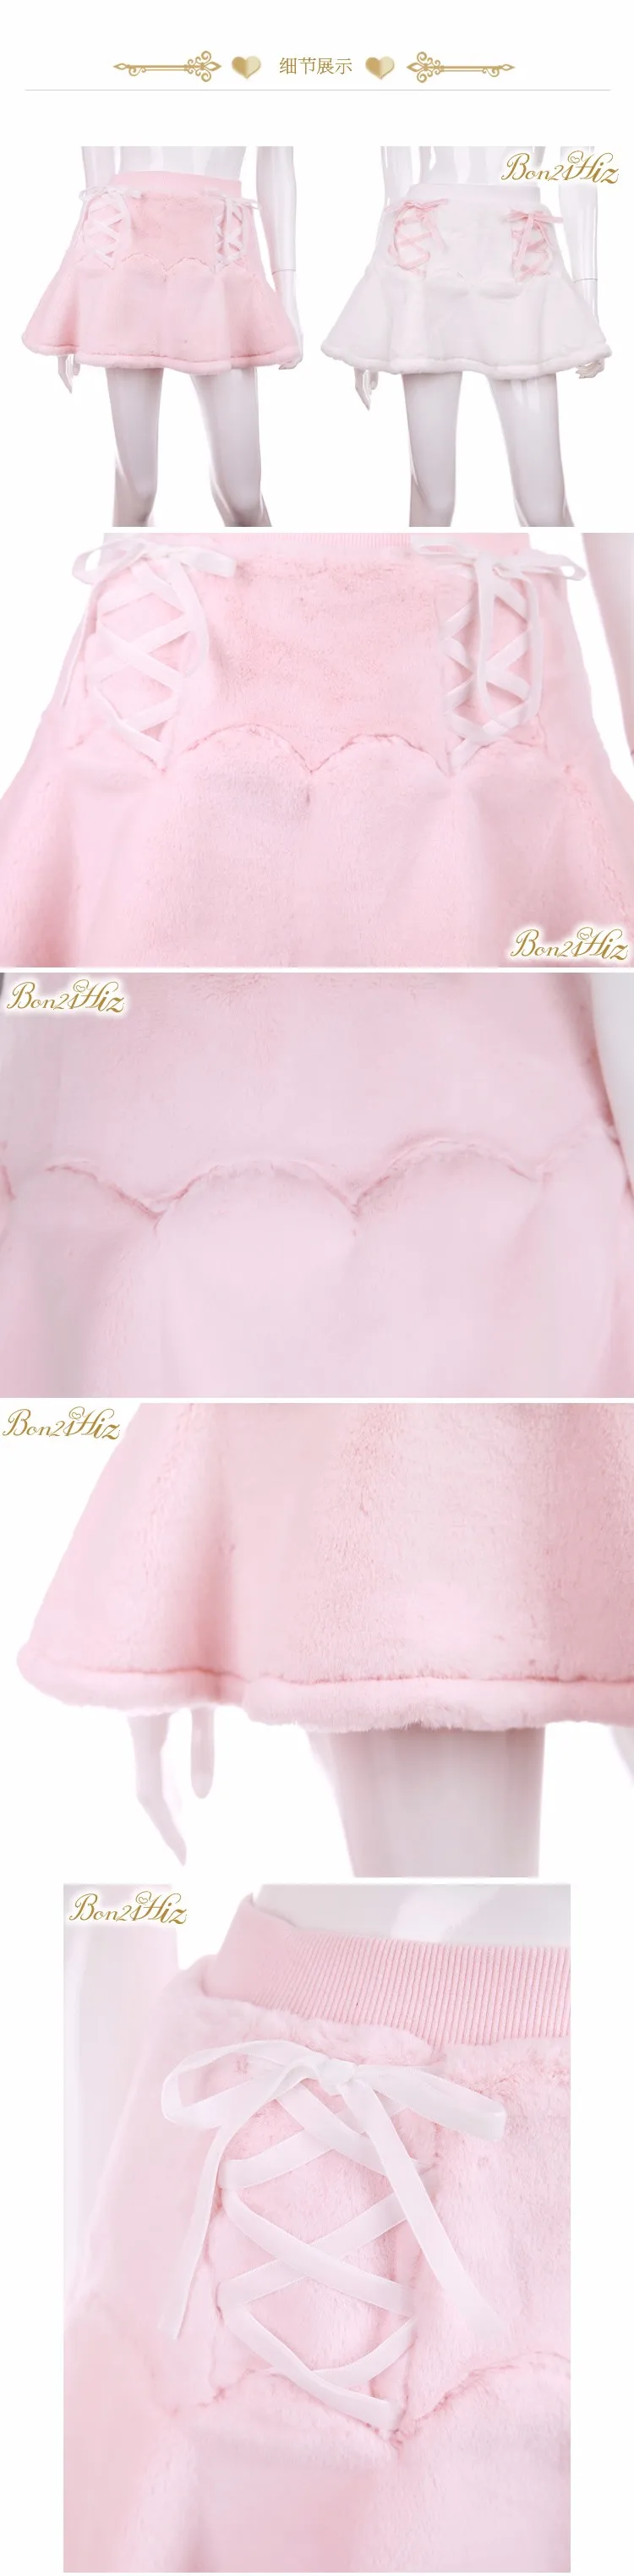 Милая юбка принцессы в стиле Лолиты; BOBON21; Двойные плюшевые бархатные трусы с лепестками цветов внутри; B1436